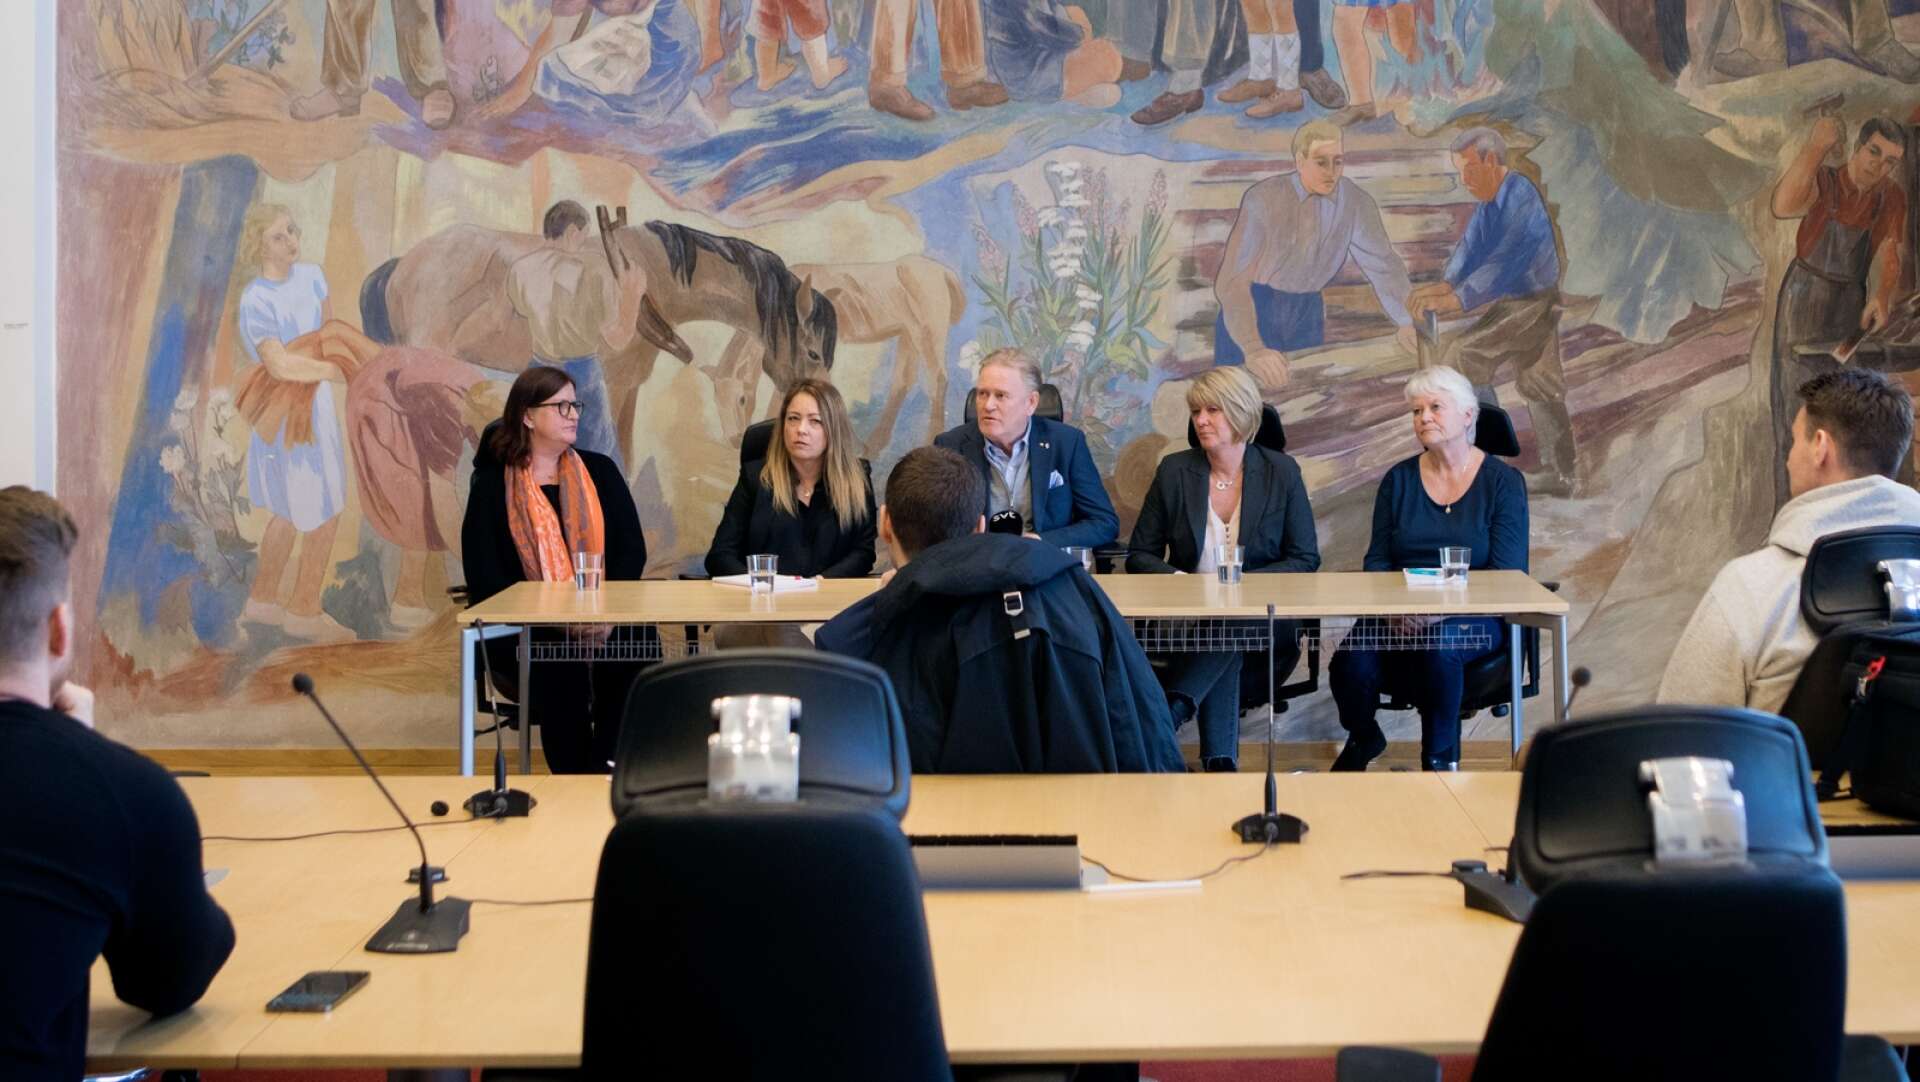 Karlskoga kommun höll presskonferens med anledning av att tre högt uppsatta tjänstemän avgått i april. Följetongen om den tafsande tjänstemannen har pågått under i princip hela 2022 och fortsättning lär följa...